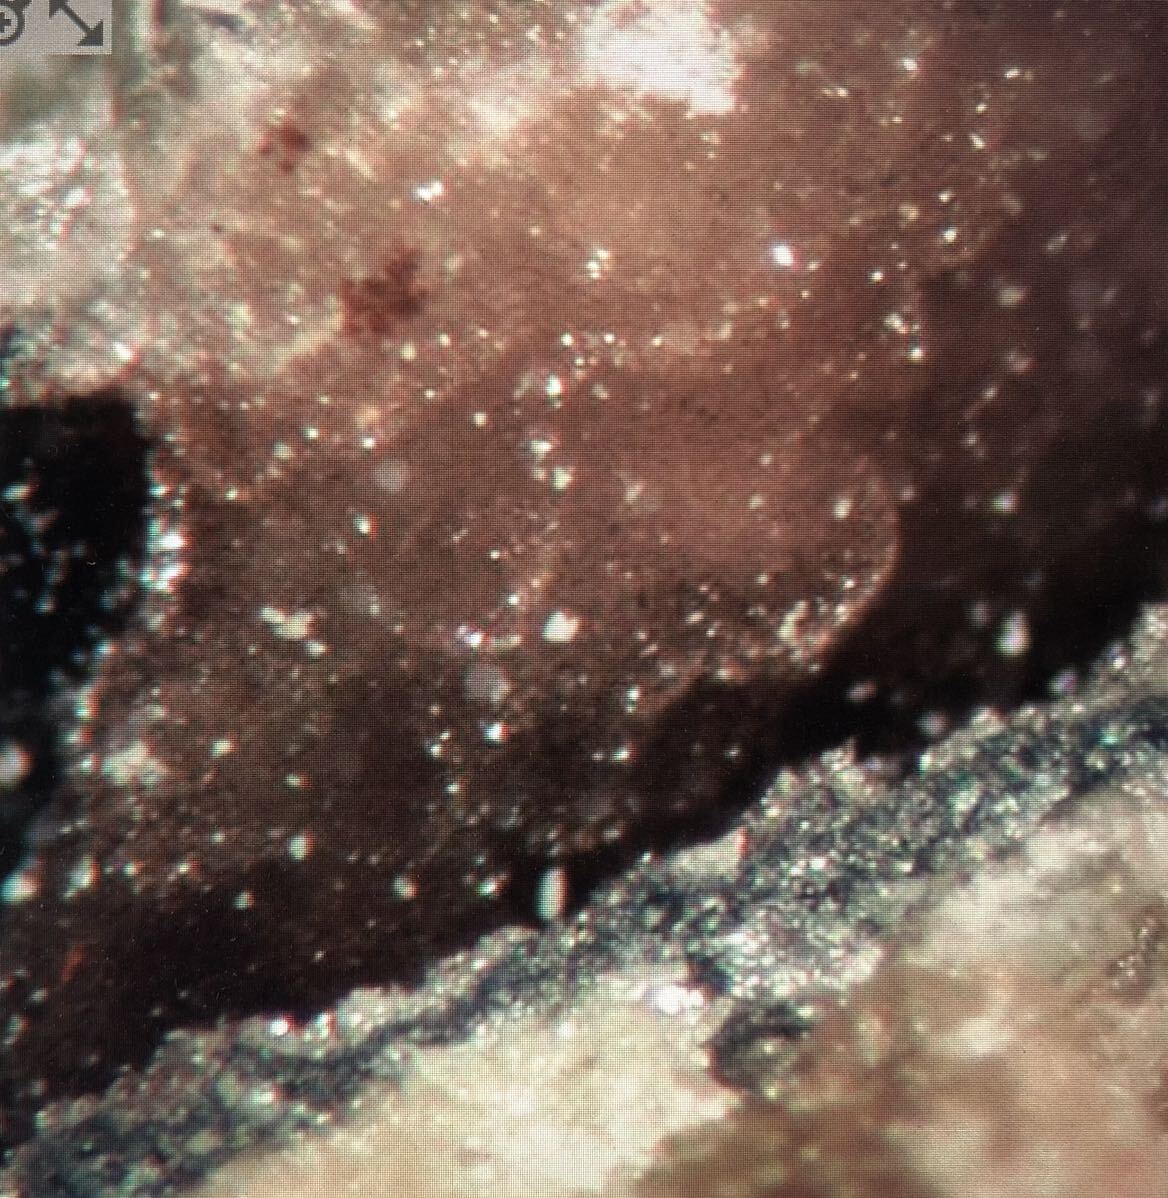 外国産鉱物 日本語情報僅かの稀産種 ウッドラフ石 ザンビアの画像1